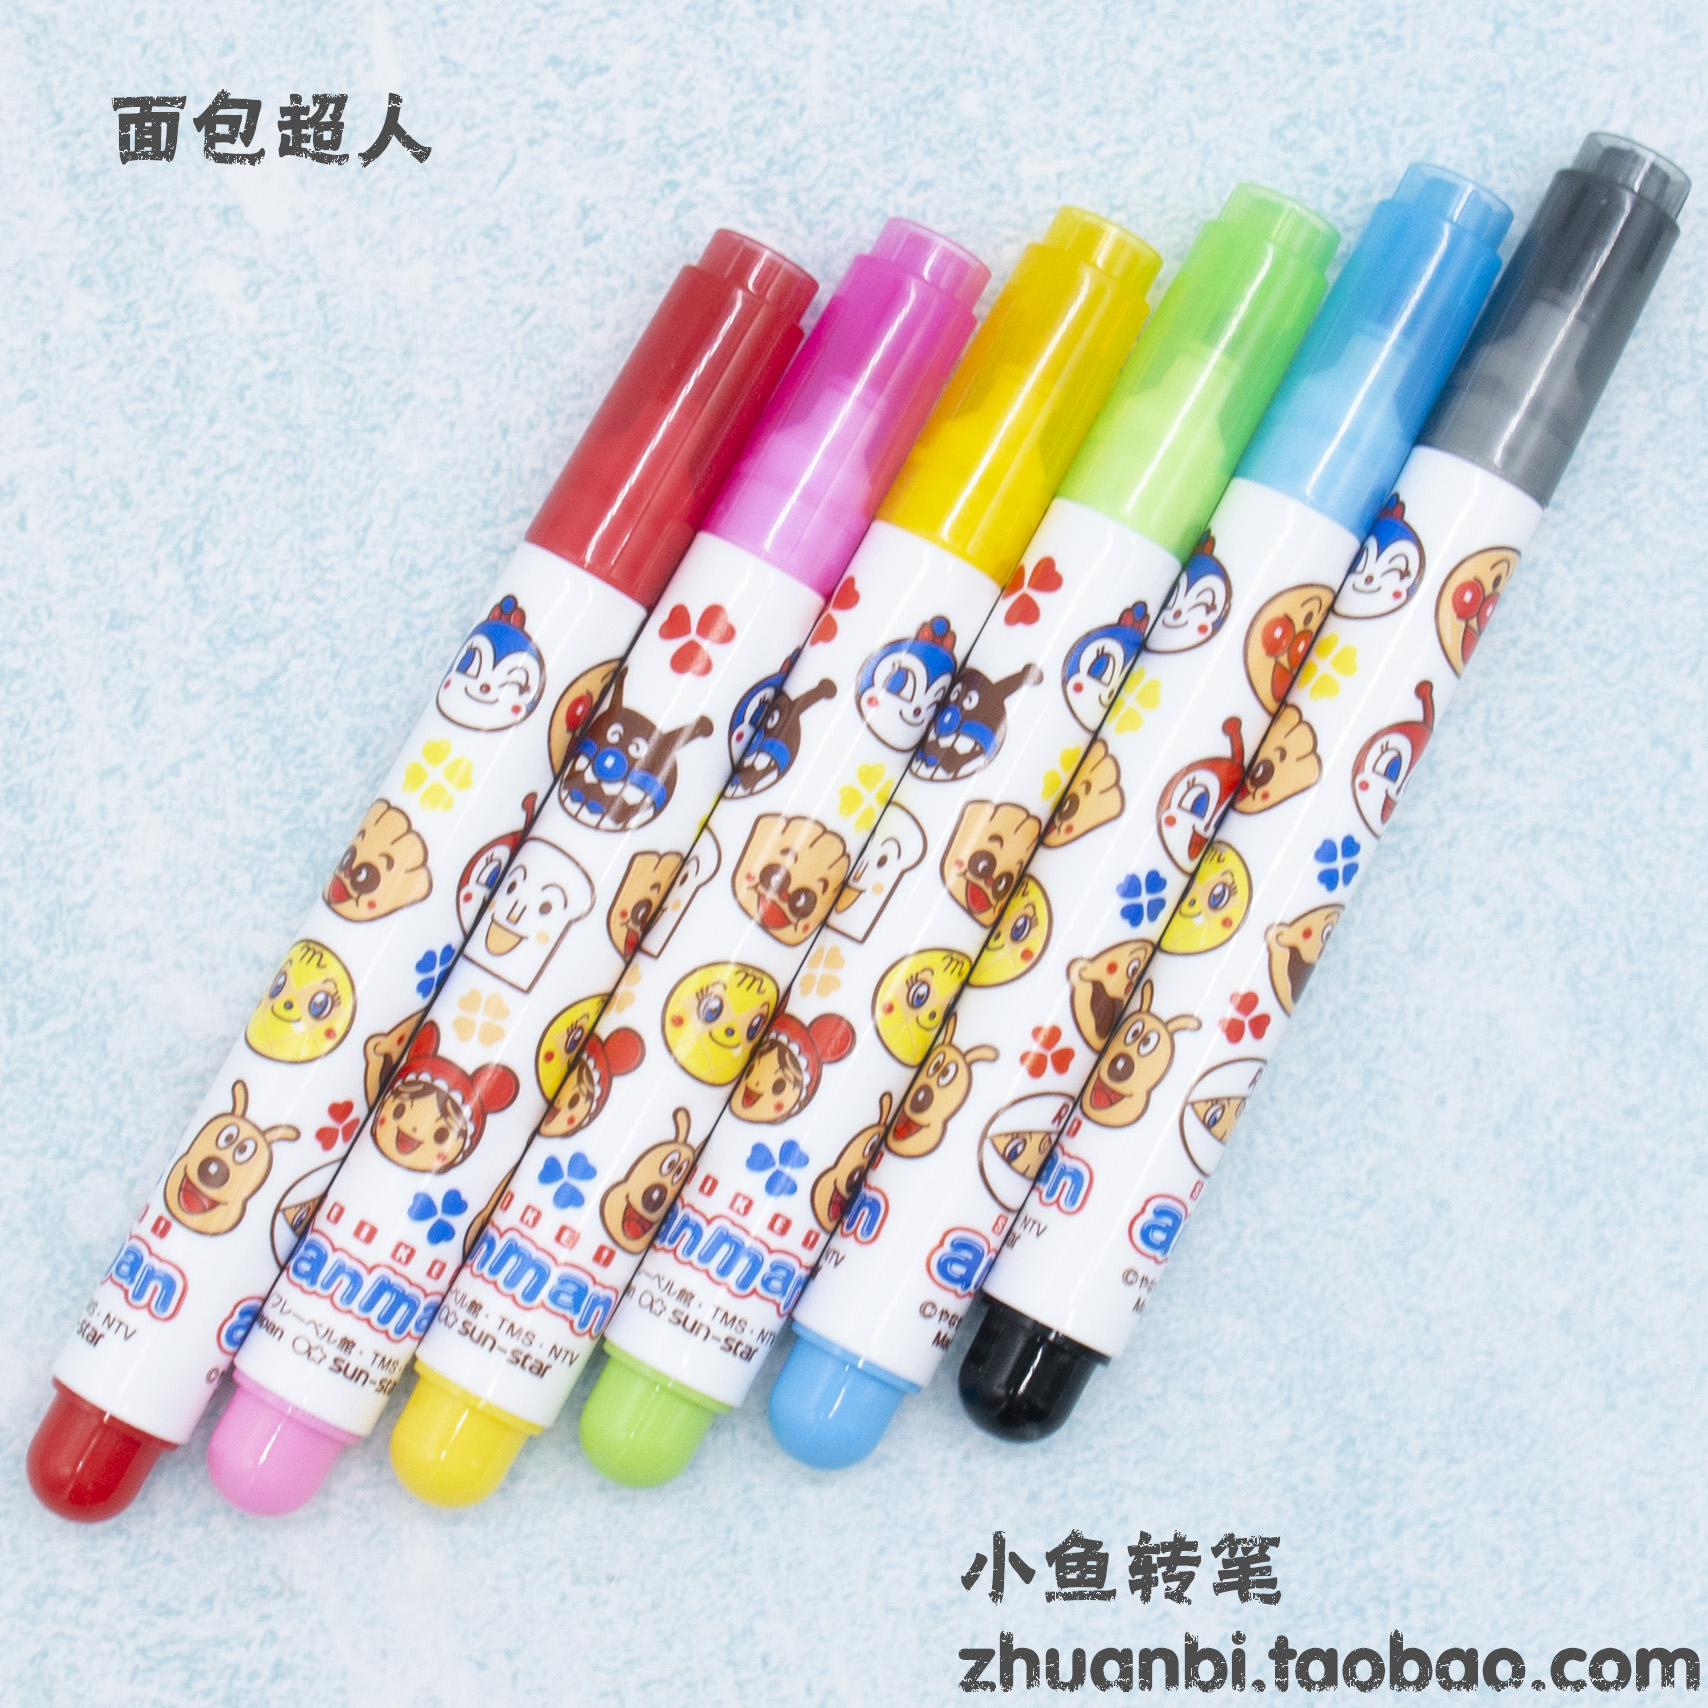 Menowa 新脑洞材料日本进口面包超人儿童宝宝6色彩色绘画彩色画笔